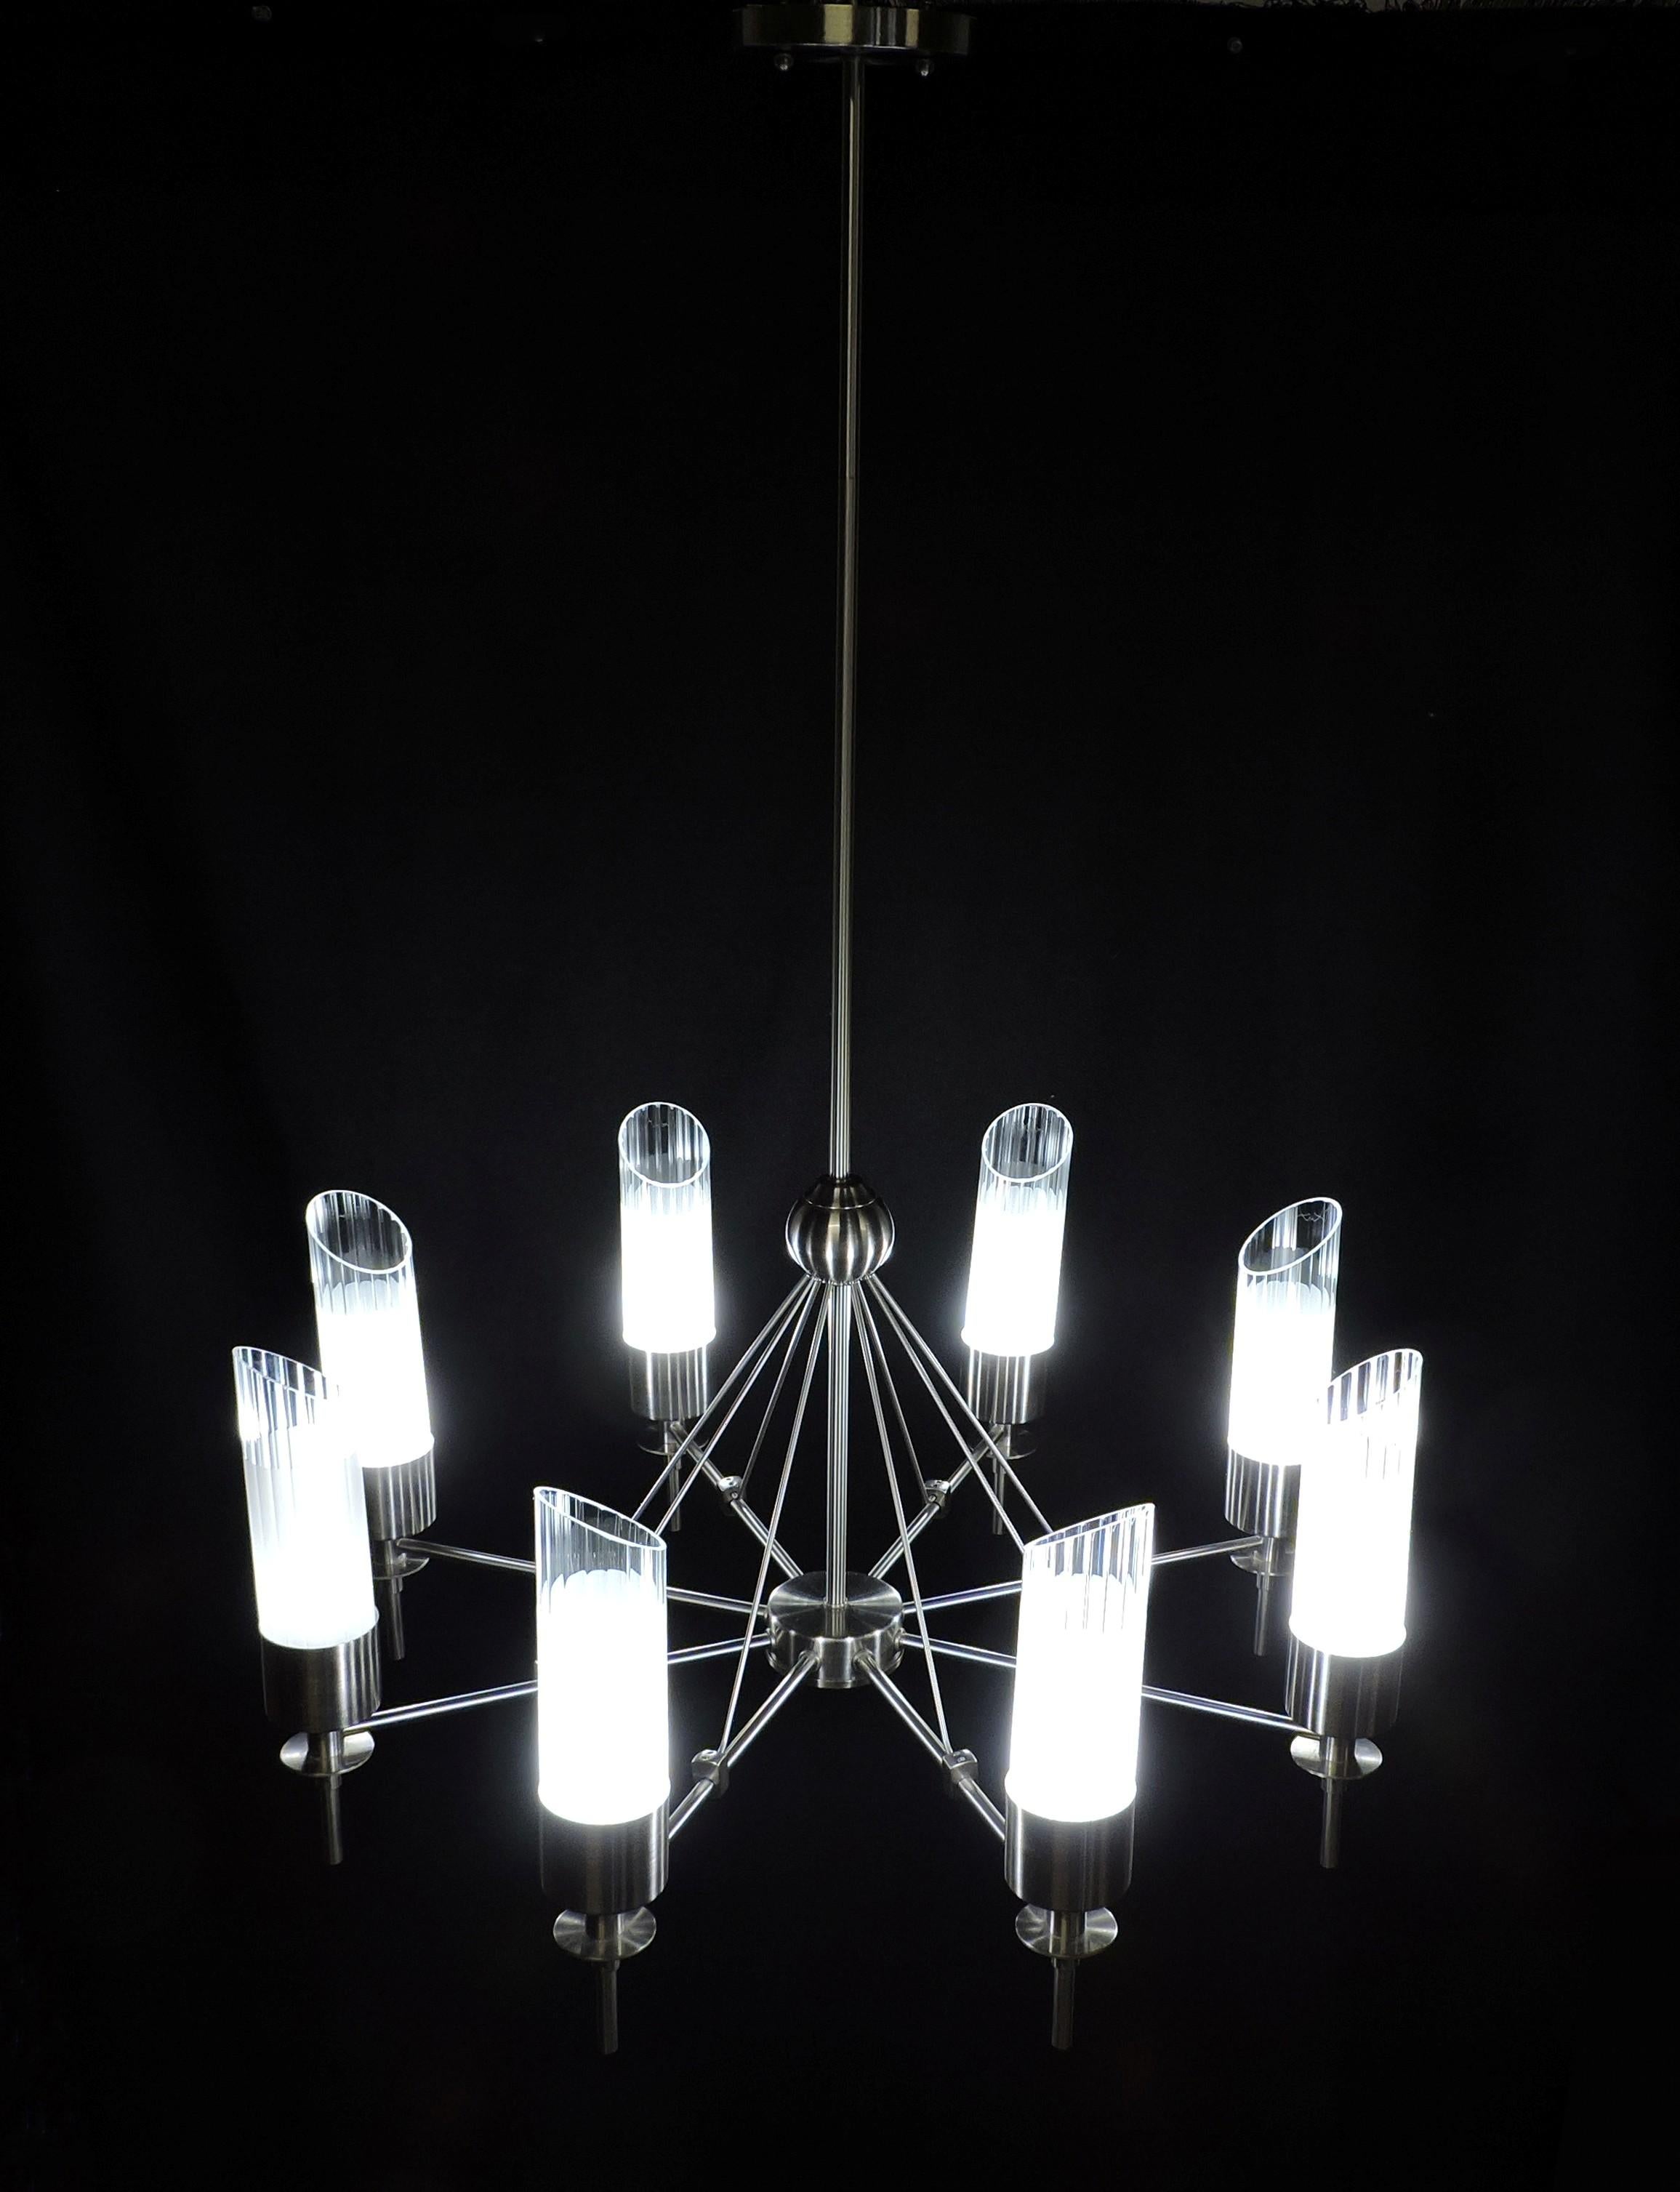 Magnifique lustre du détaillant de design haut de gamme, Luminaire. Cet impressionnant luminaire à 8 lumières est doté d'une finition en acier inoxydable et d'abat-jour cylindriques en verre transparent cannelé qui sont partiellement givrés. Il